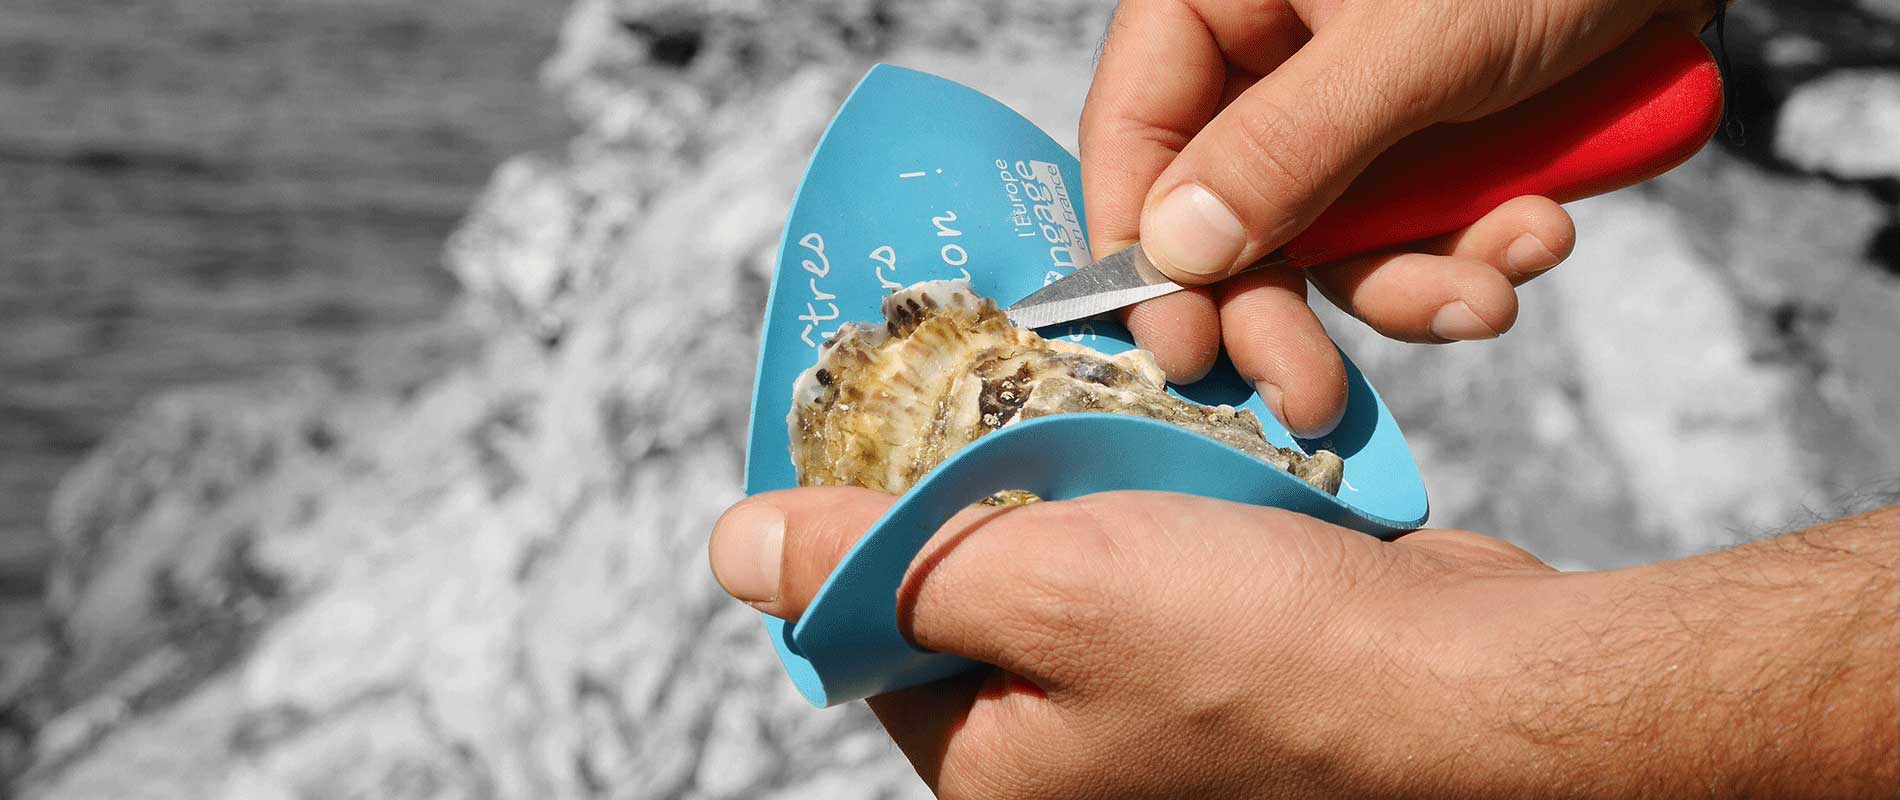 Ouverture des huîtres : que faire en cas de blessure à la main (et comment  éviter de se couper) ? - Top Santé